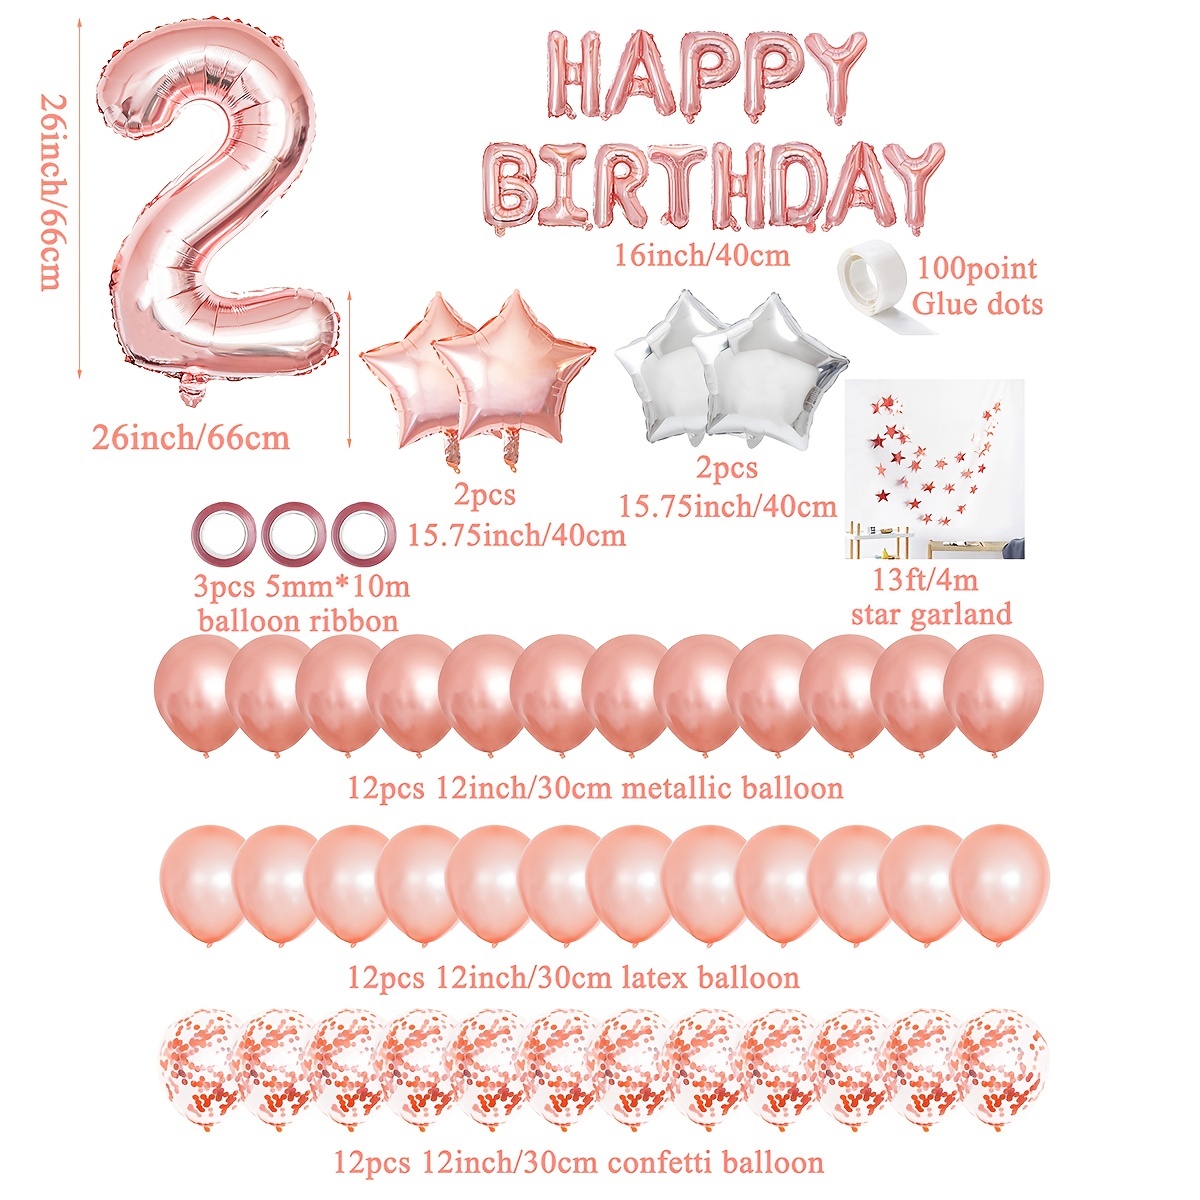 Ballons décoration 10e anniversaire or rose, ensemble décoration